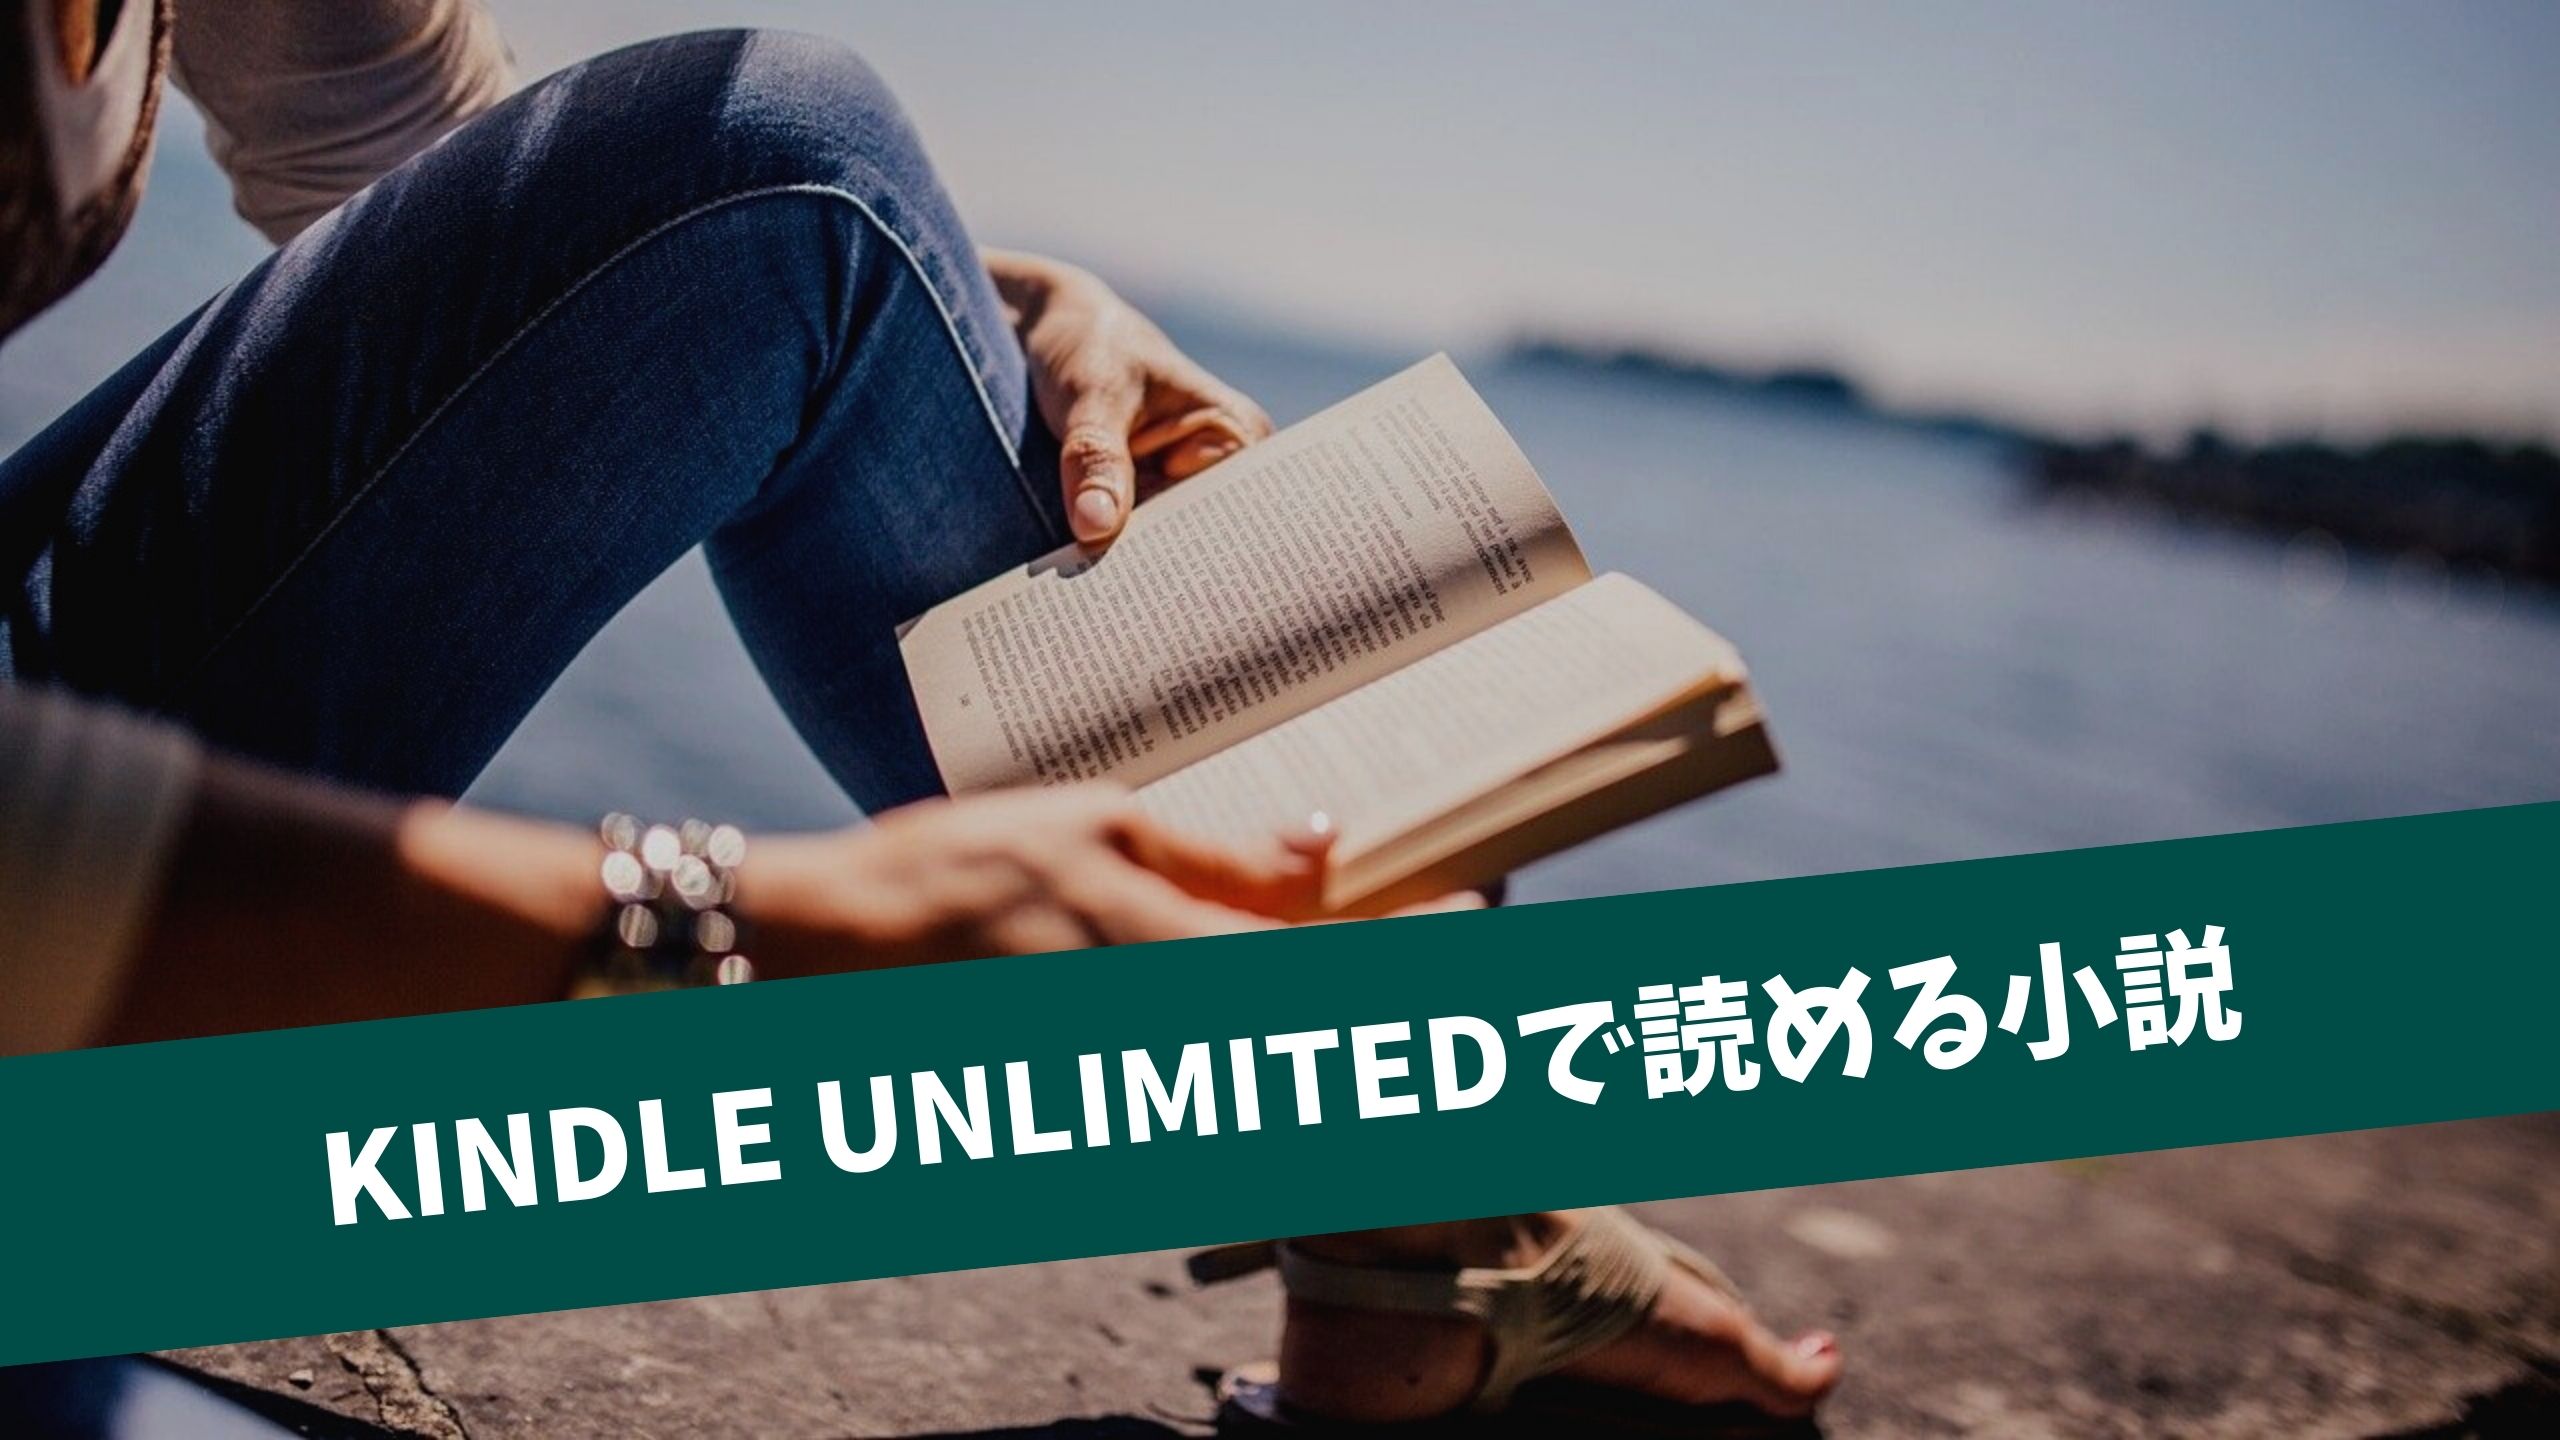 Kindle Unlimitedの小説おすすめ35選 恋愛 ミステリー 海外作品一覧 英語マイスター